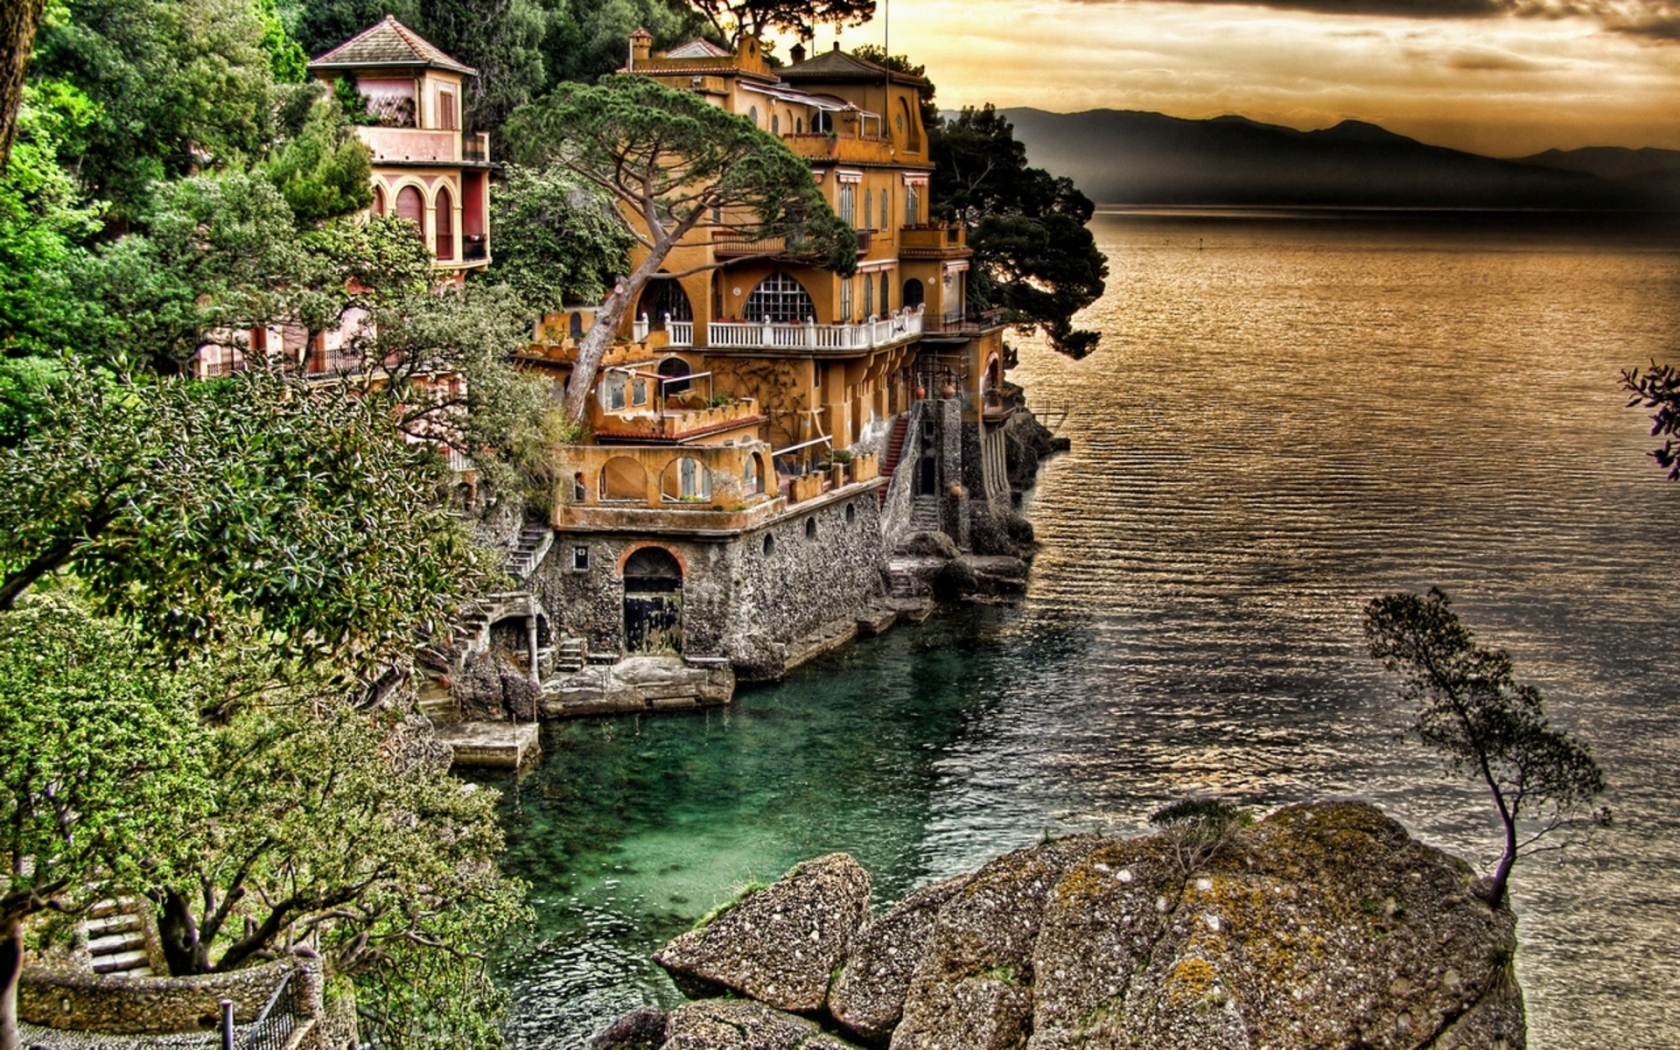 Portofino Coast View for 1680 x 1050 widescreen resolution